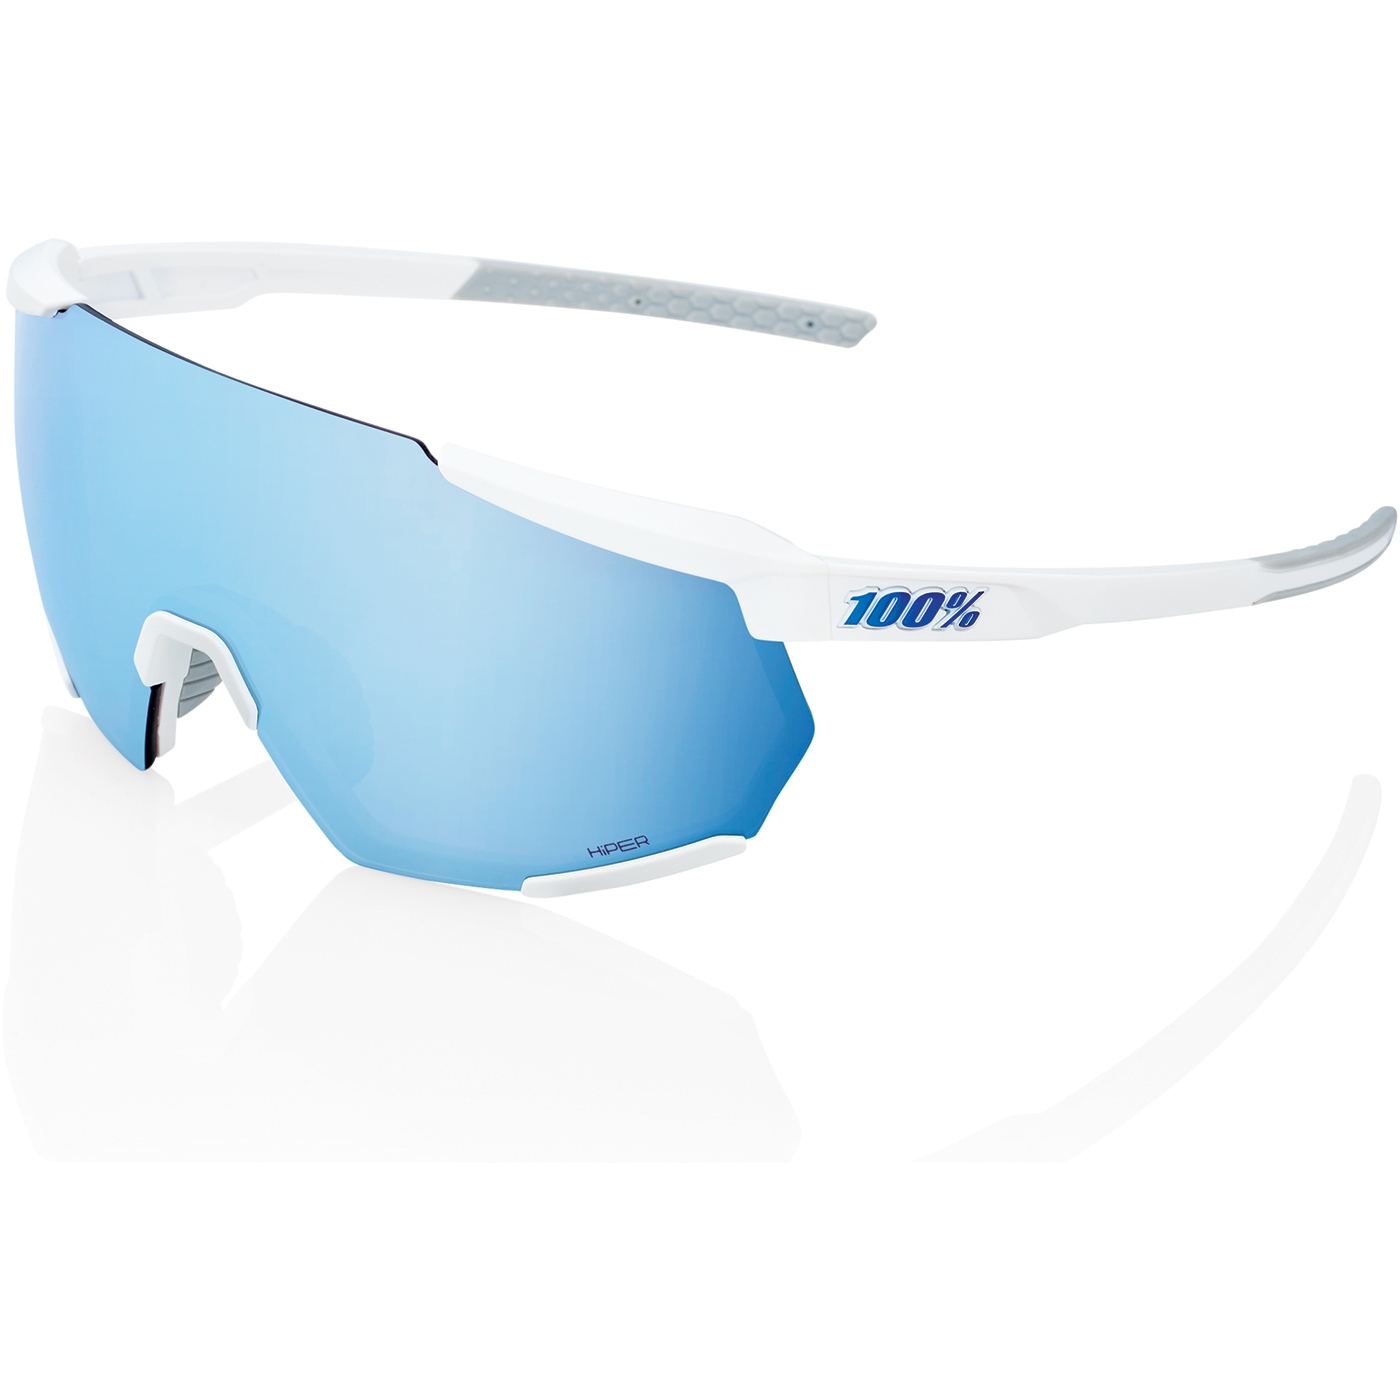 Productfoto van 100% Racetrap 3.0 Glasses - HiPER Mirror Lens - Matte White / Multilayer Blue + Clear